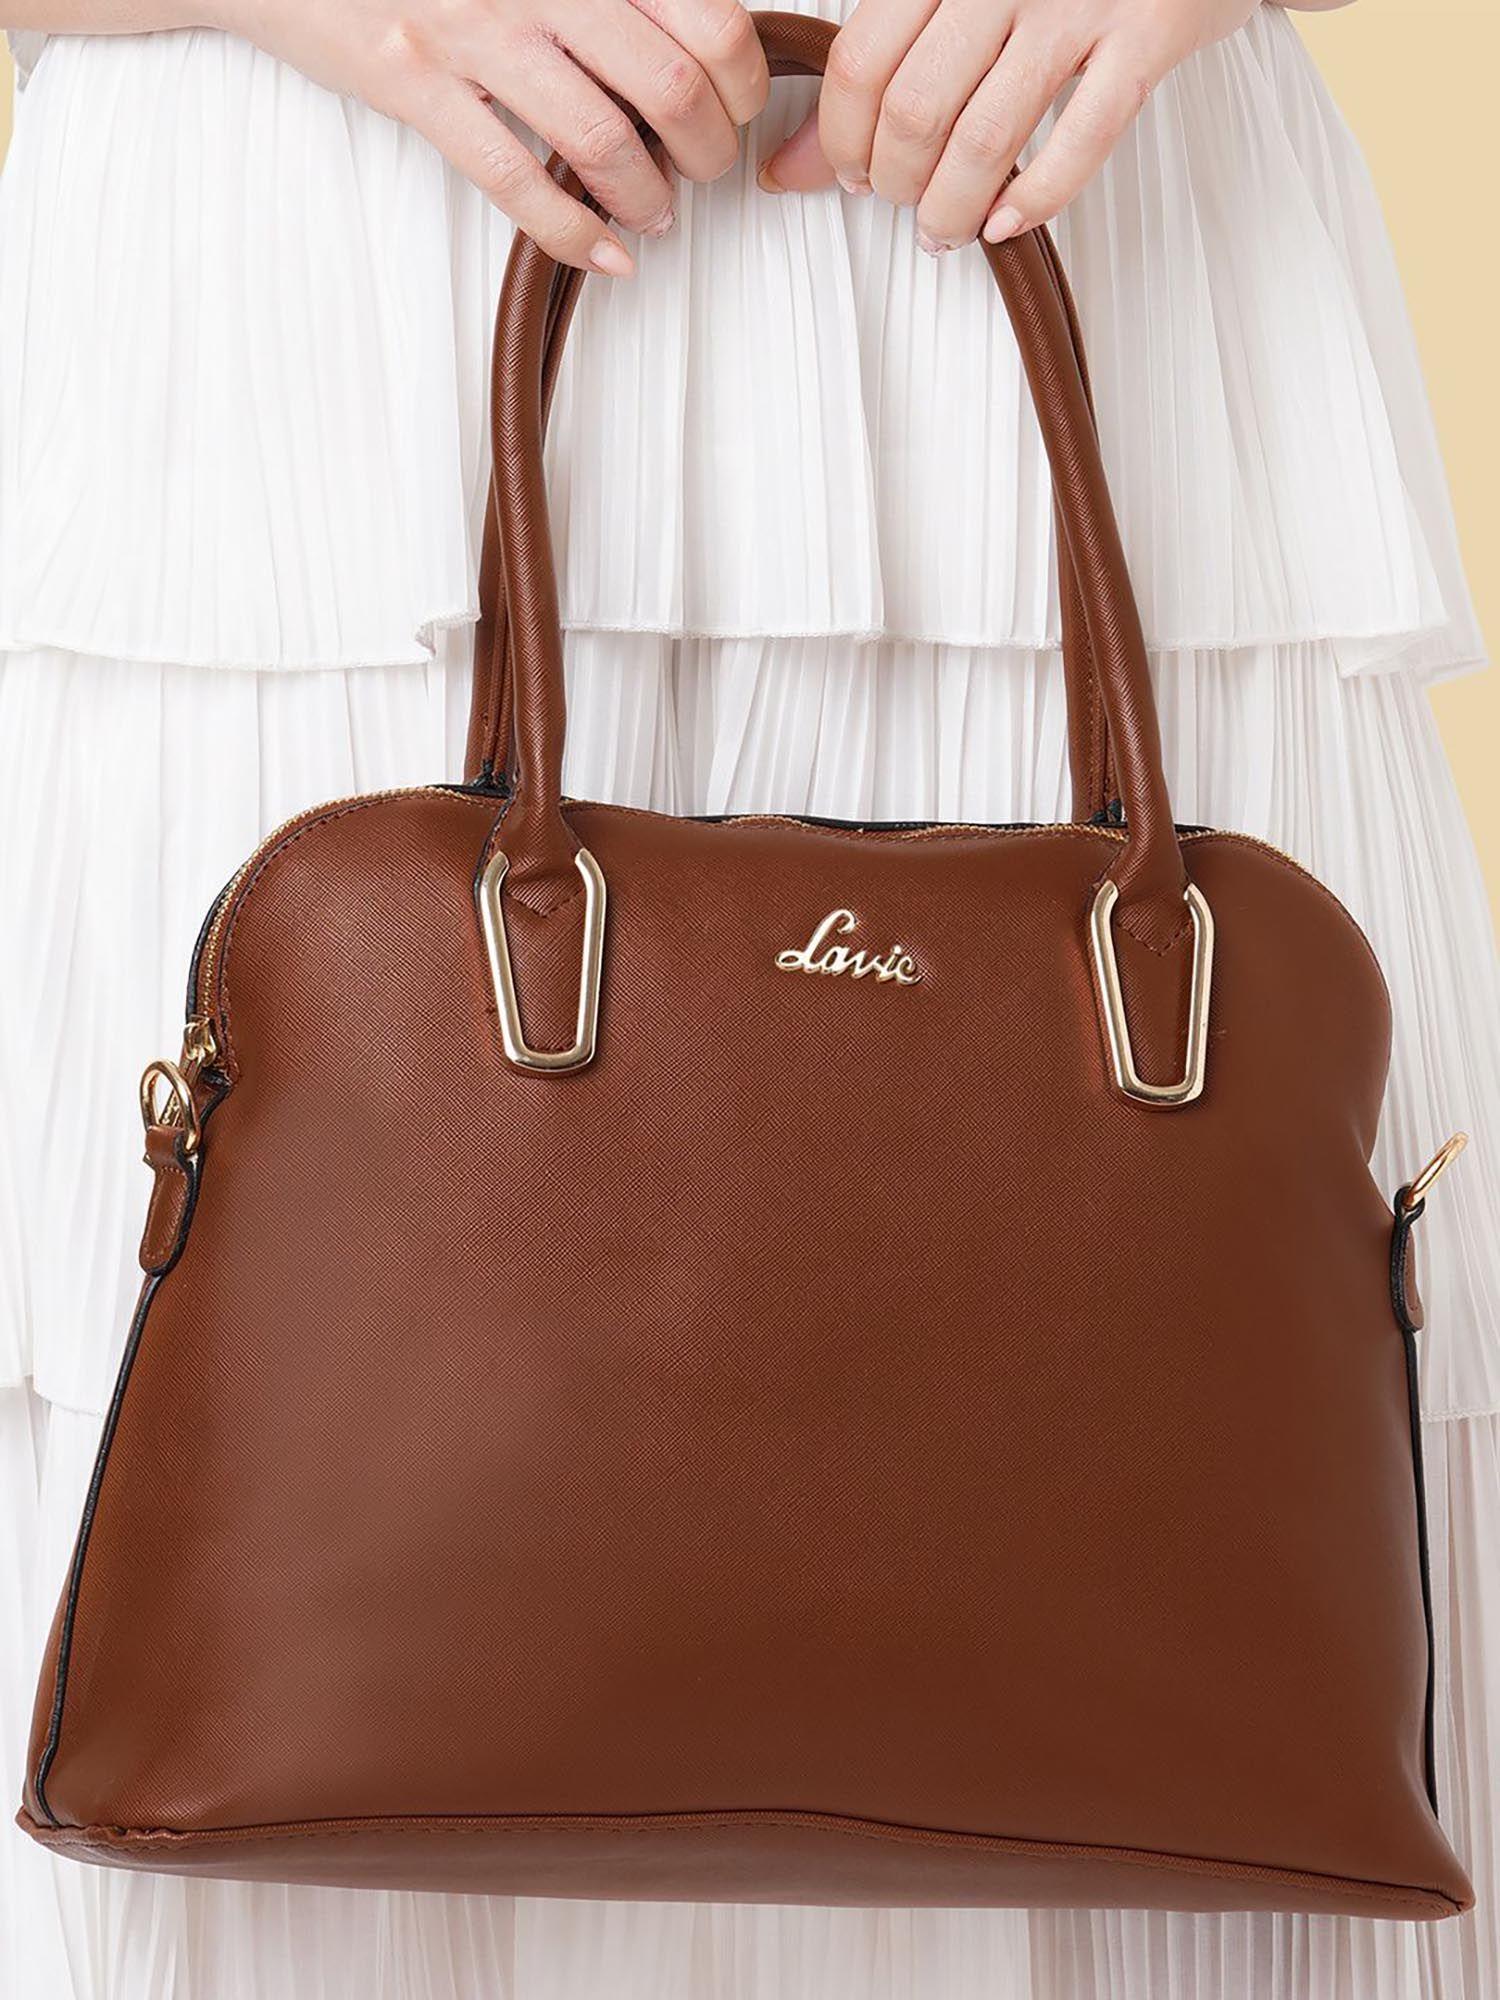 ketaminepro women's medium satchel handbag (tan)